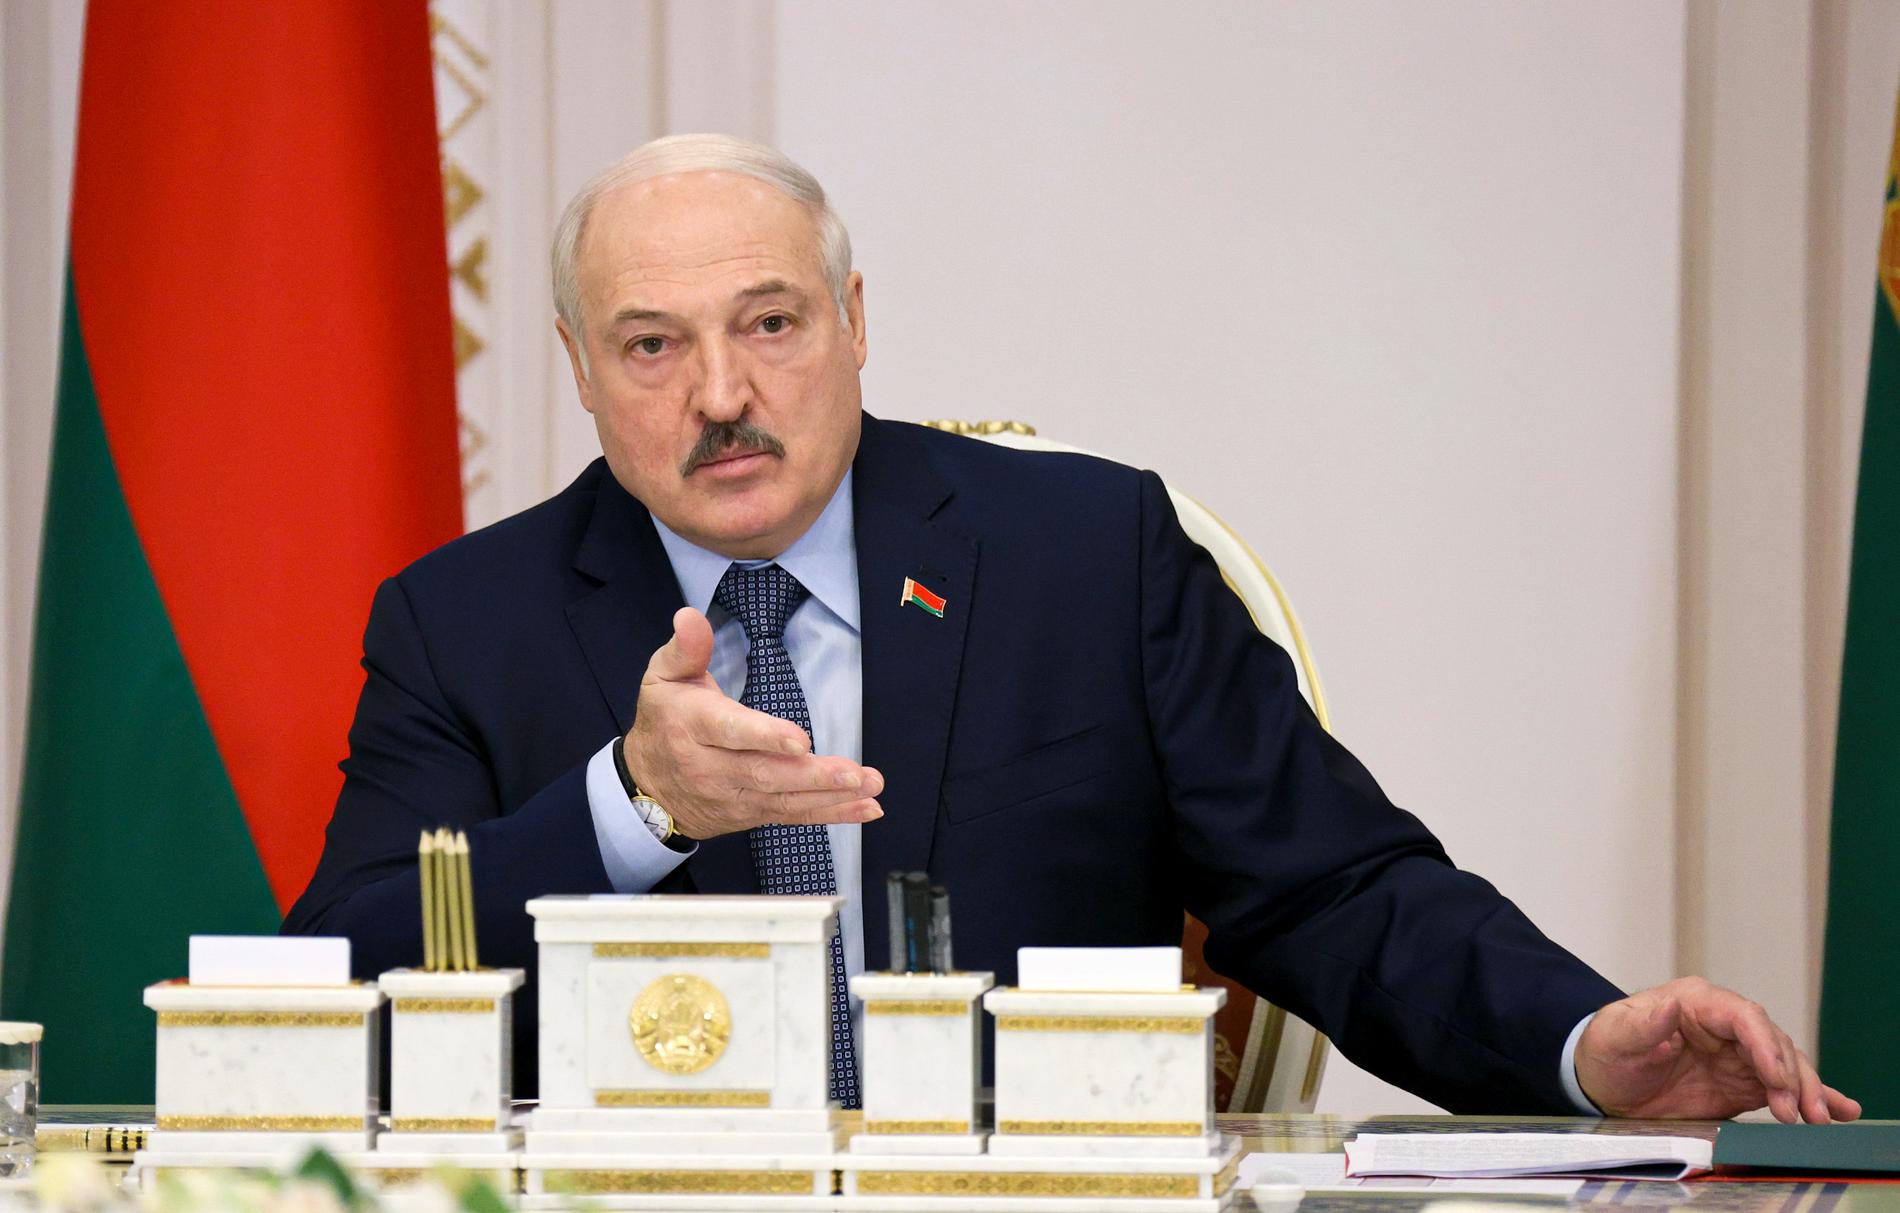 Belarus ledare Aleksandr Lukasjenko har upprepade gånger varnat för att landet inte tänker stoppa migranter och flyktingar på väg till väst. "Vi kommer inte hålla tillbaka någon. De är på väg mot det upplysta, varma och mysiga Europa", sade han i början av juli. Arkivfoto.